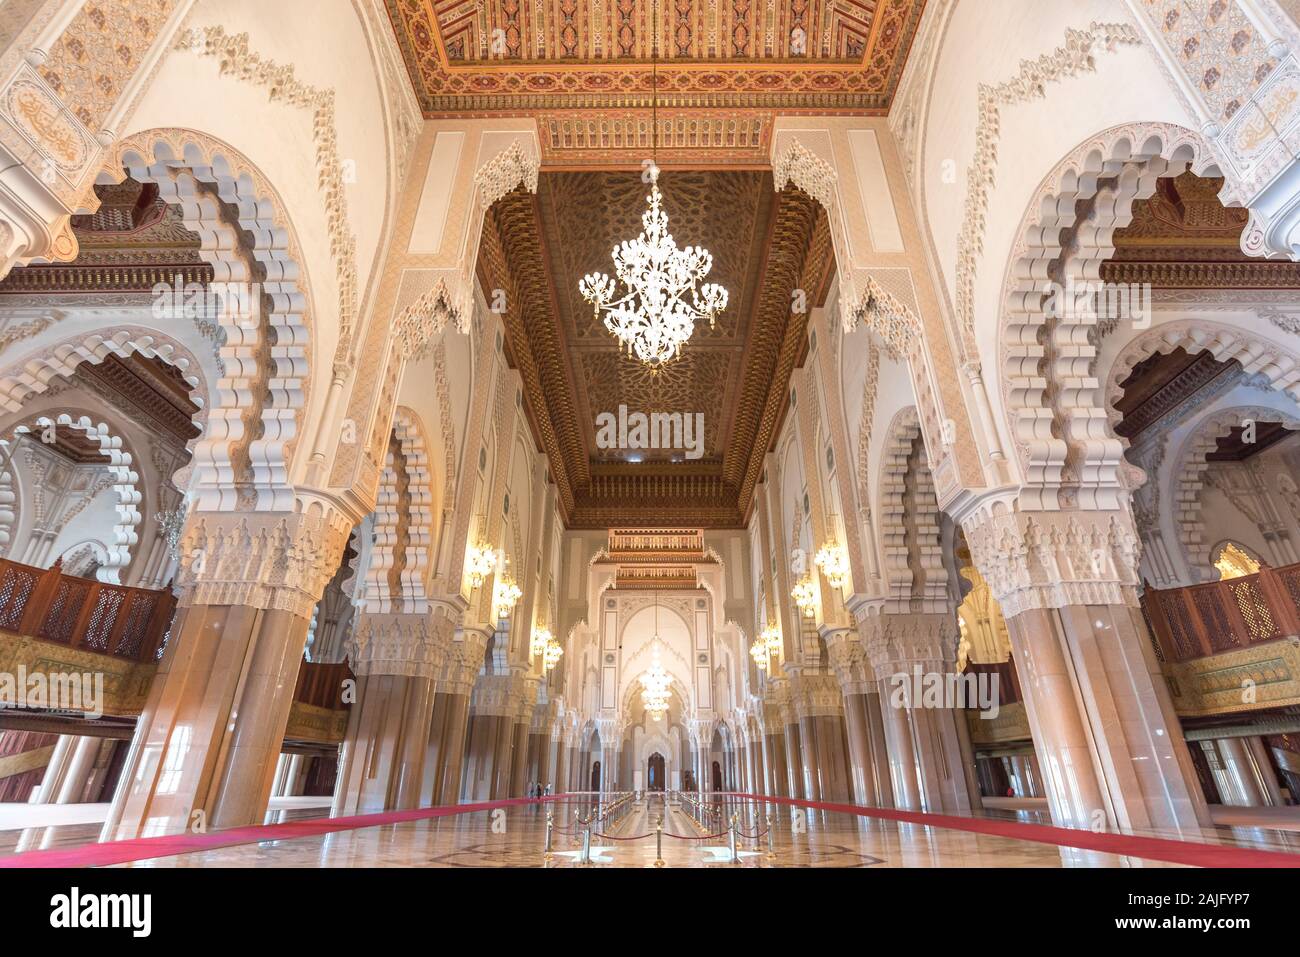 Casablanca, en Marruecos: Interior (sala de oración) de la Mezquita de Hassan II con columnas, arcos y arañas de cristal. La arquitectura islámica Foto de stock